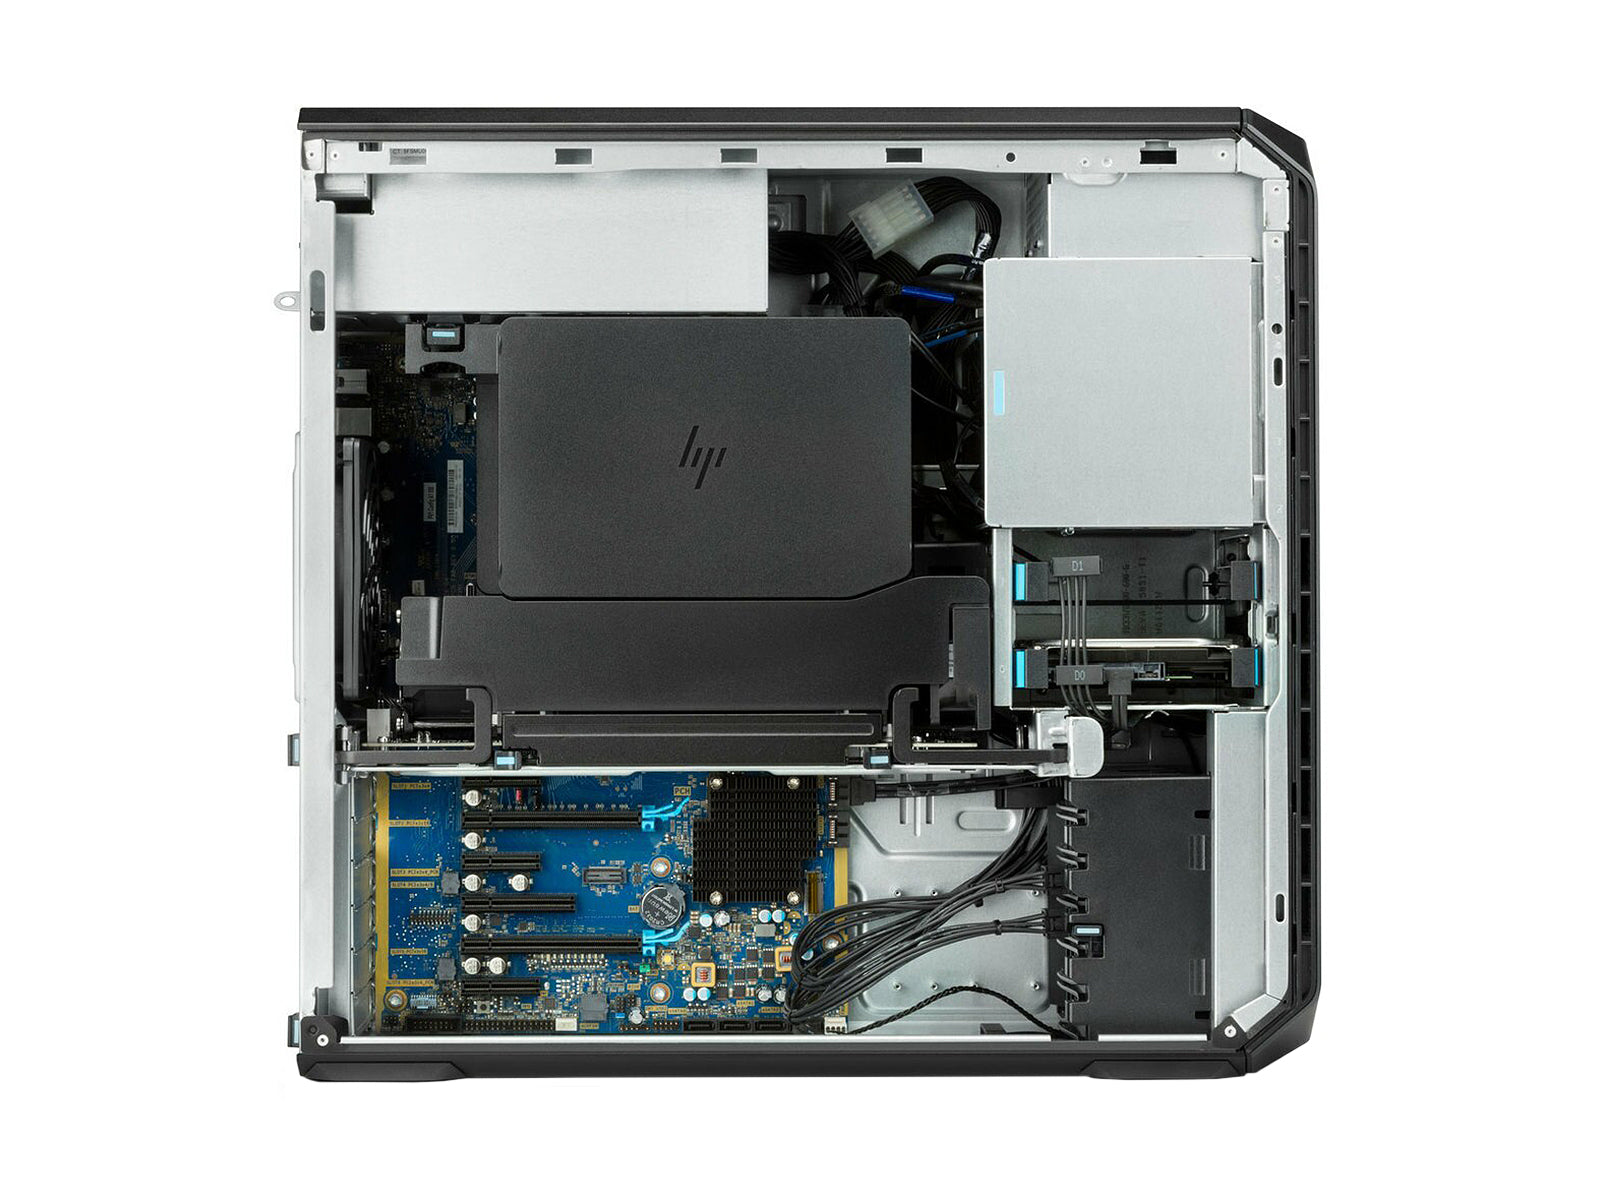 HP Z6 G4 Workstation | Intel Xeon Platinum 8173M @ 3.50GHz | 28-Core | 64GB ECC DDR4 | 512GB ZTurbo NVMe M.2 SSD | MXRT 7600 | Win10 Pro Monitors.com 